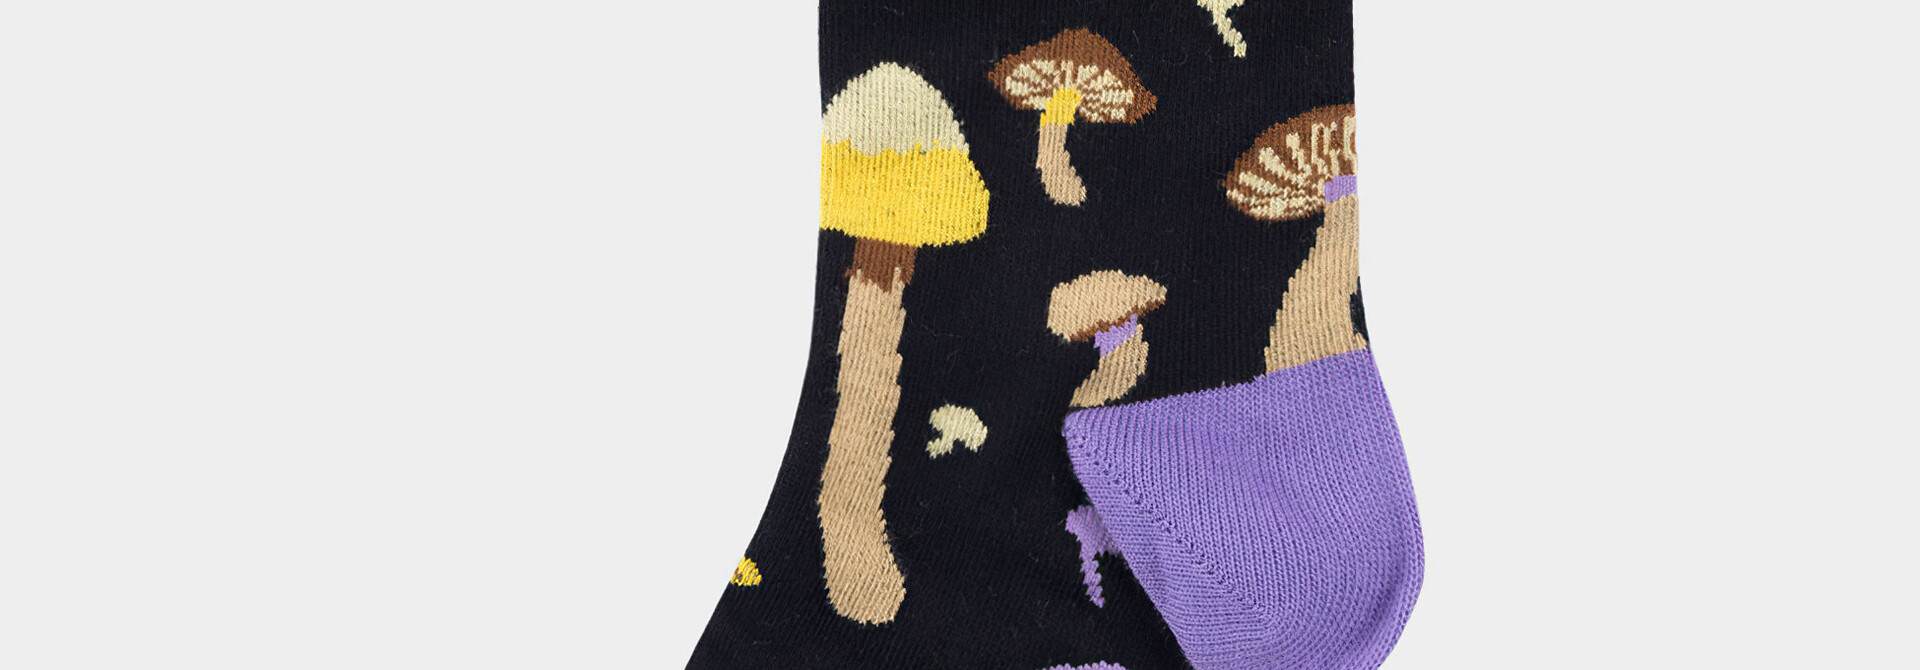 ♣ Sigtuna Mushrooms Socks